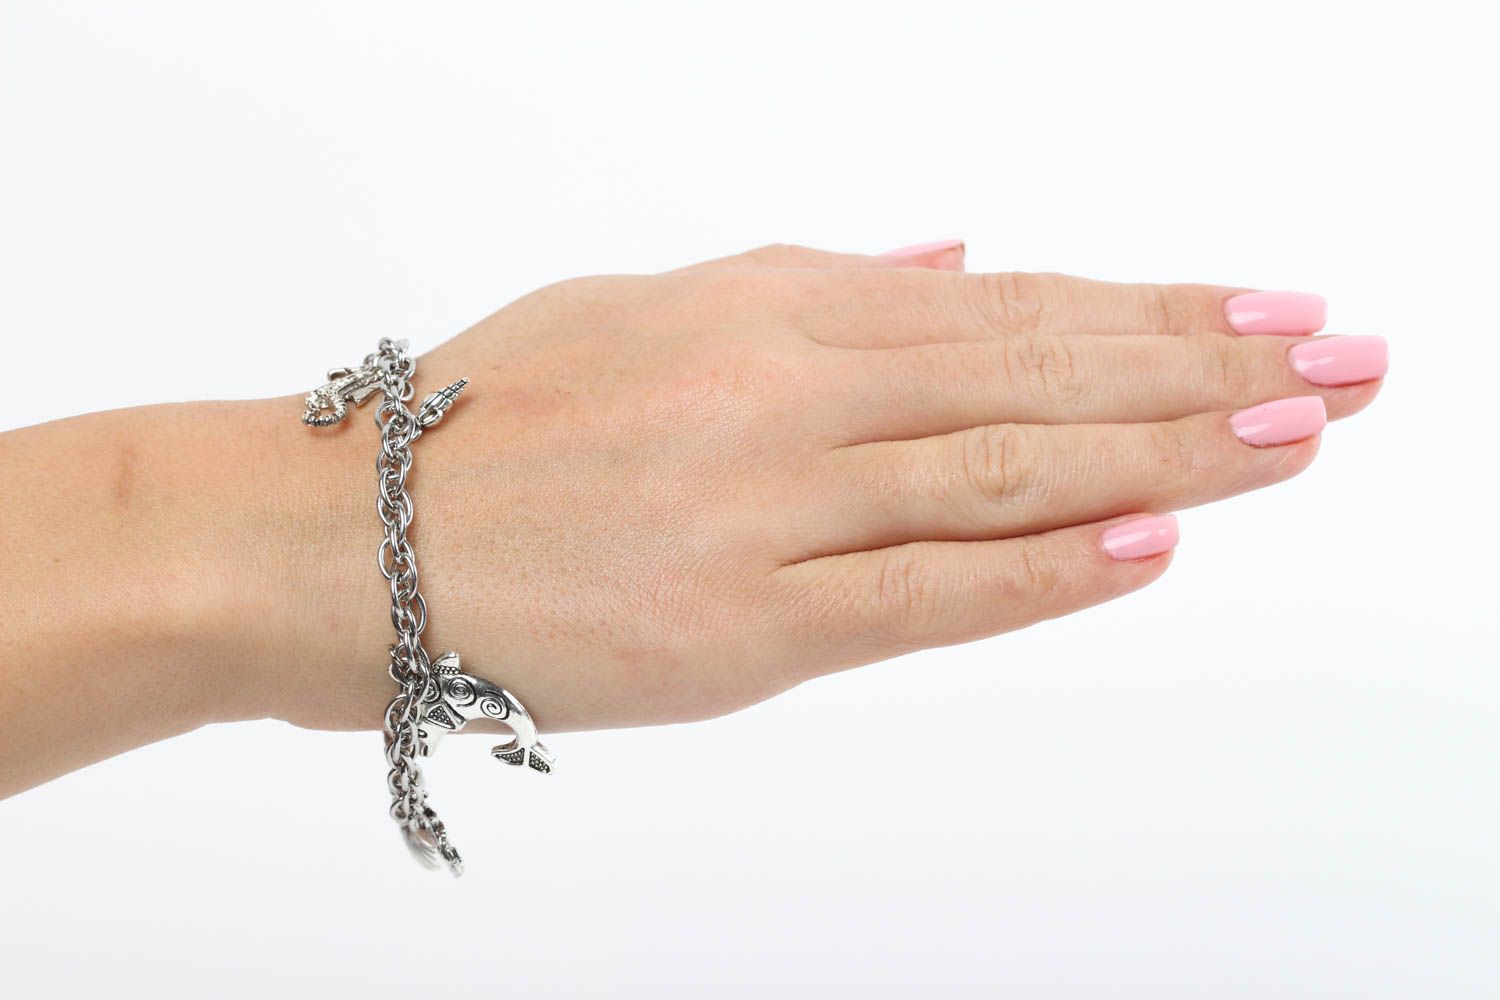 Handmade bracelet designer bracelet with charms unusual gift for women photo 5